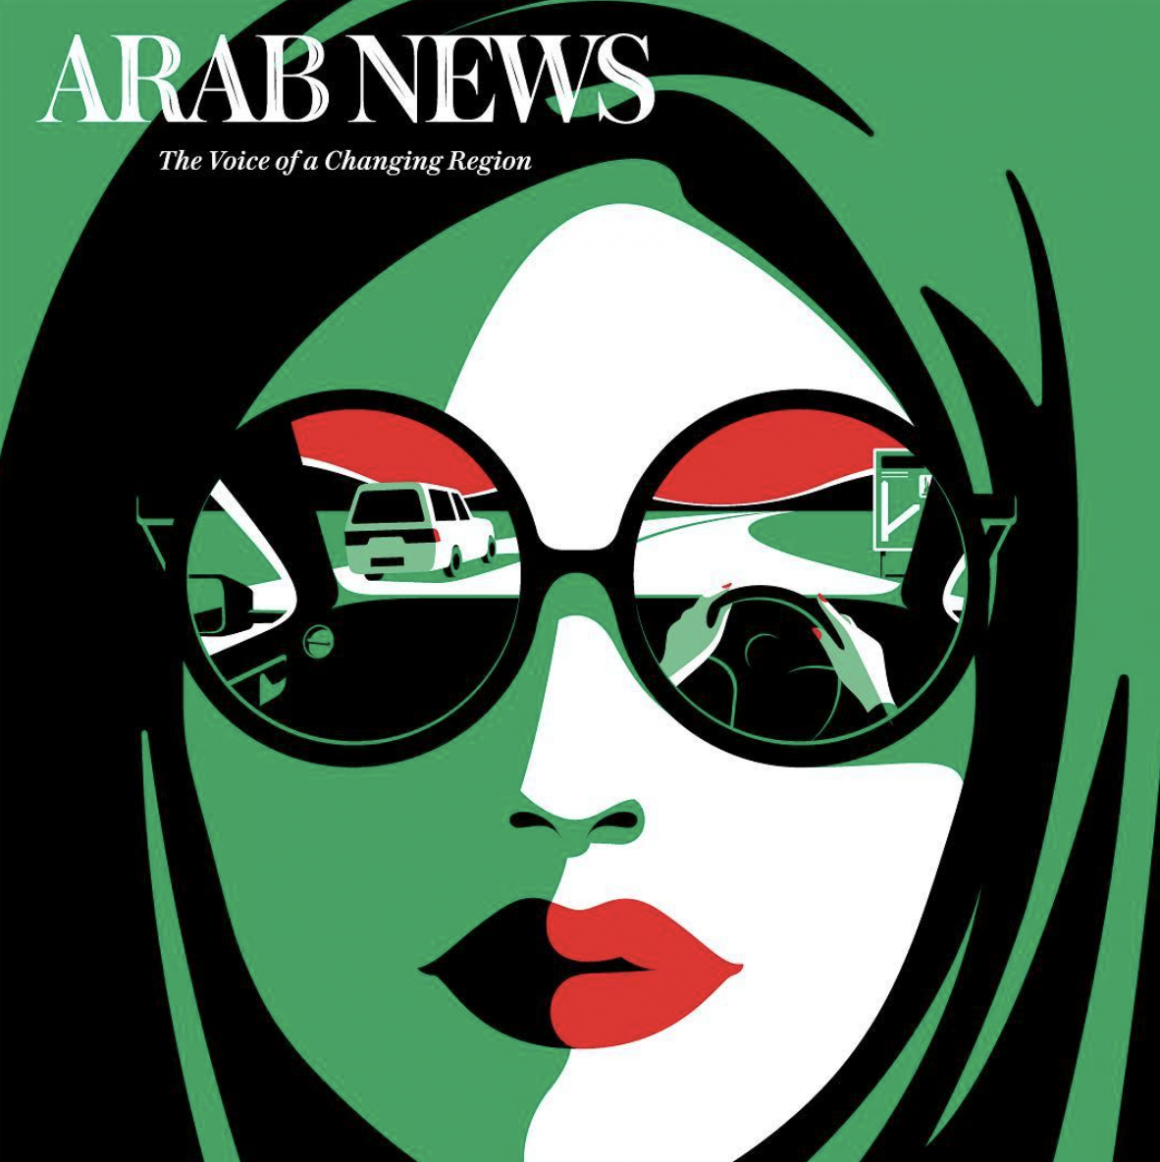 Couverture de Arab News par Malika Favre